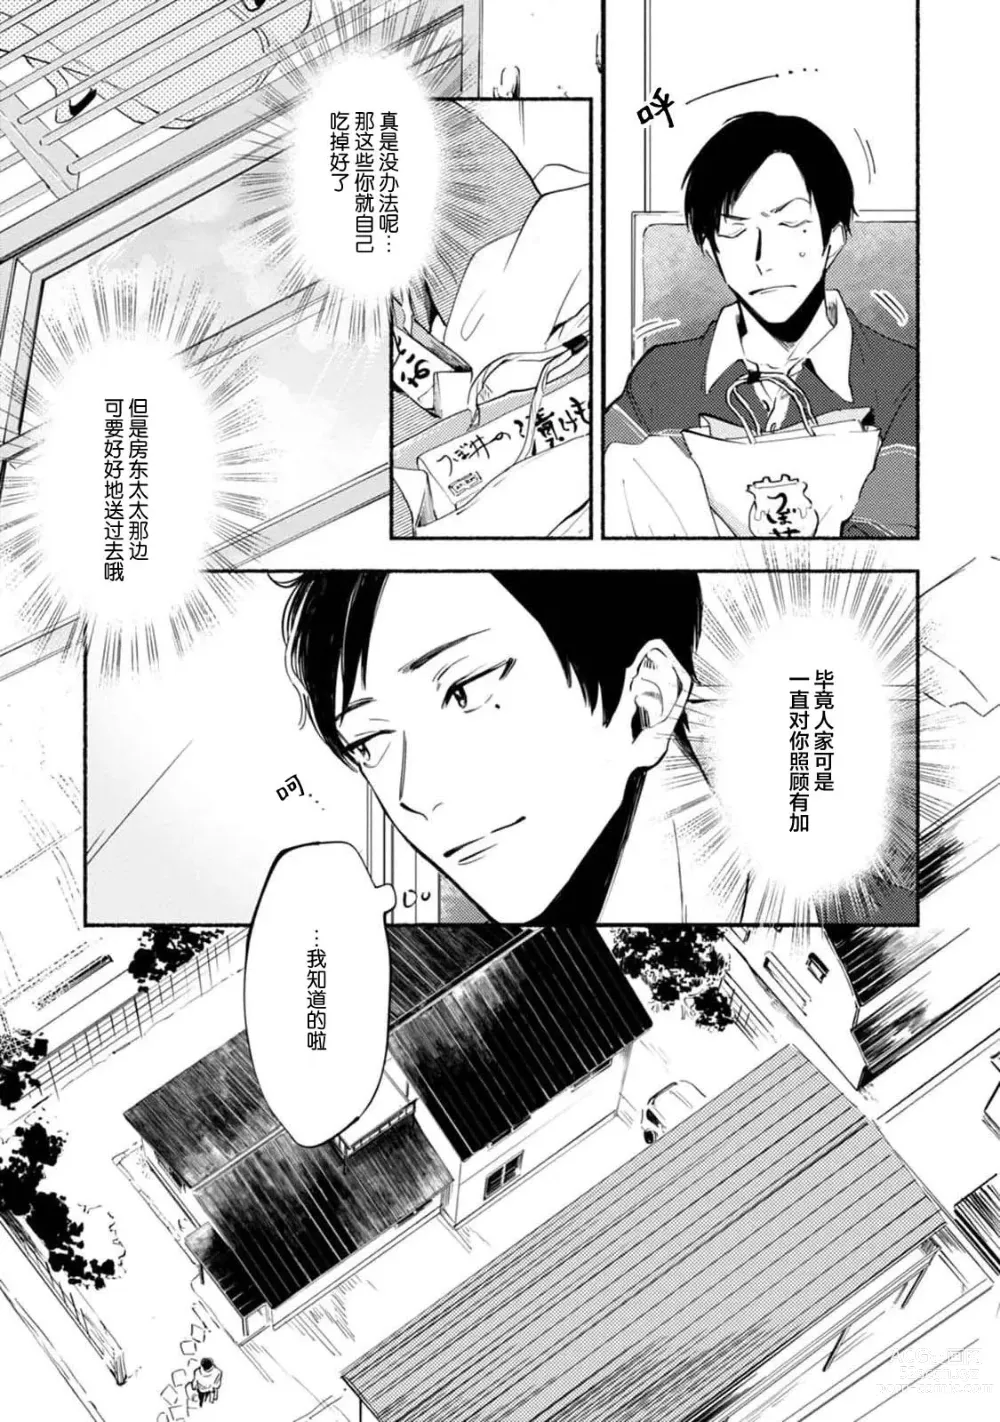 Page 7 of manga 与春为邻